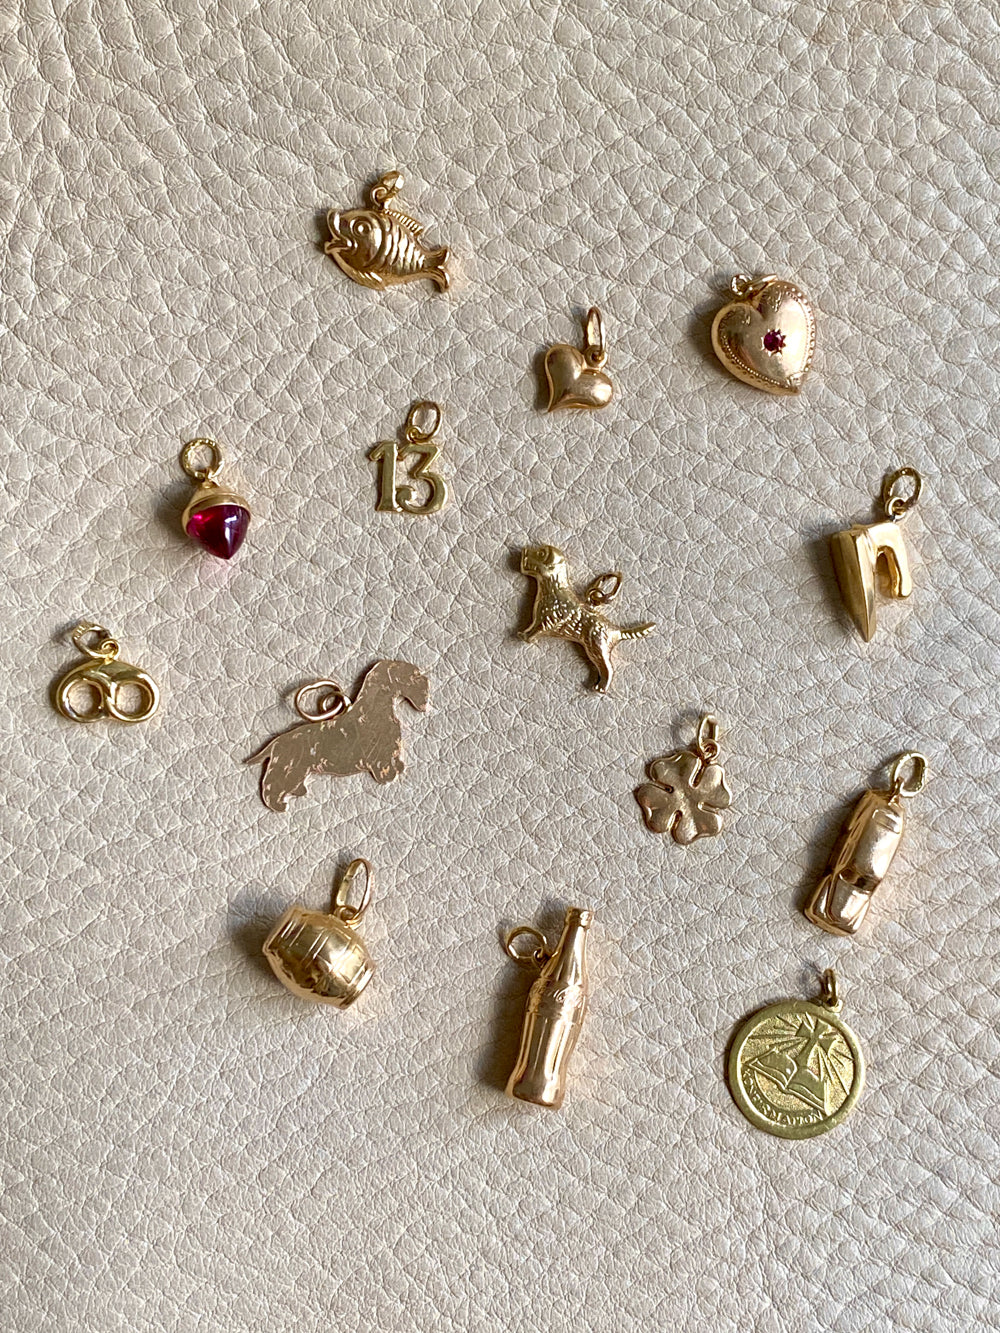 18k gold Swedish vintage charm or pendant - Pretzel - made 1923-1965